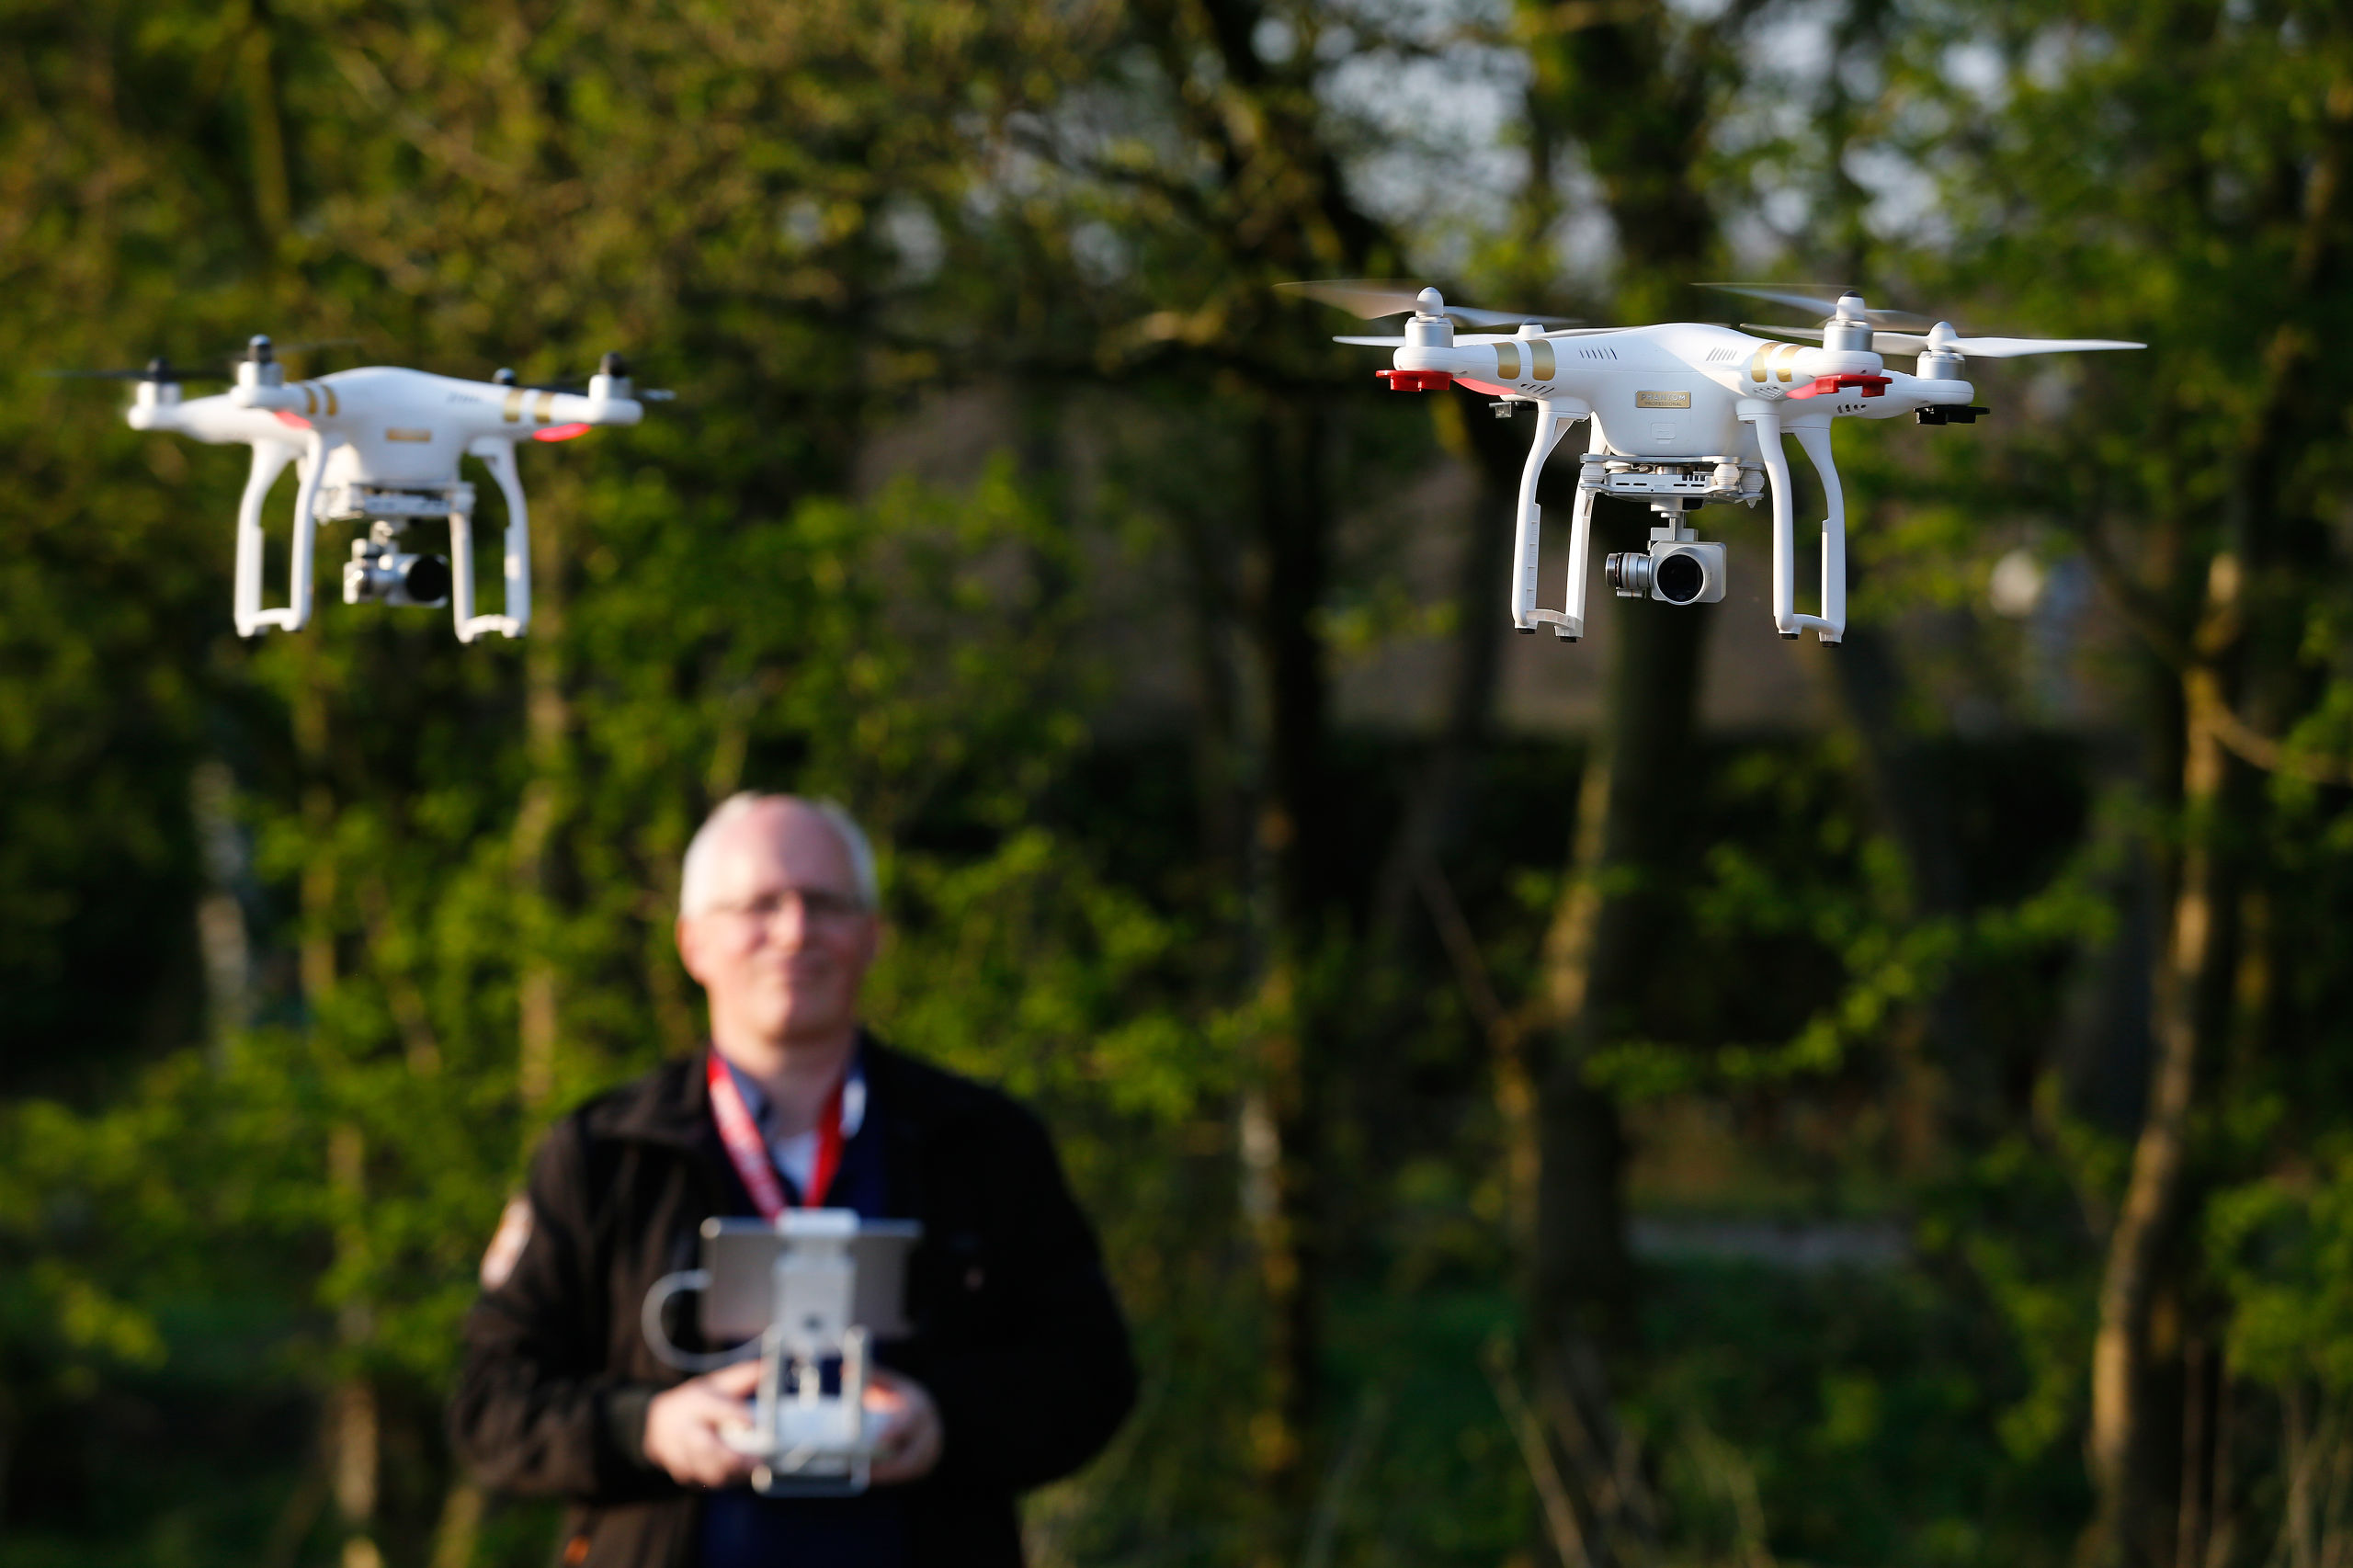 Eigenaars van drones testen in de buurt van luchthaven Schiphol geofencing, een technologie die moet voorkomen dat drones kunnen opstijgen op plaatsen waar dat niet mag.